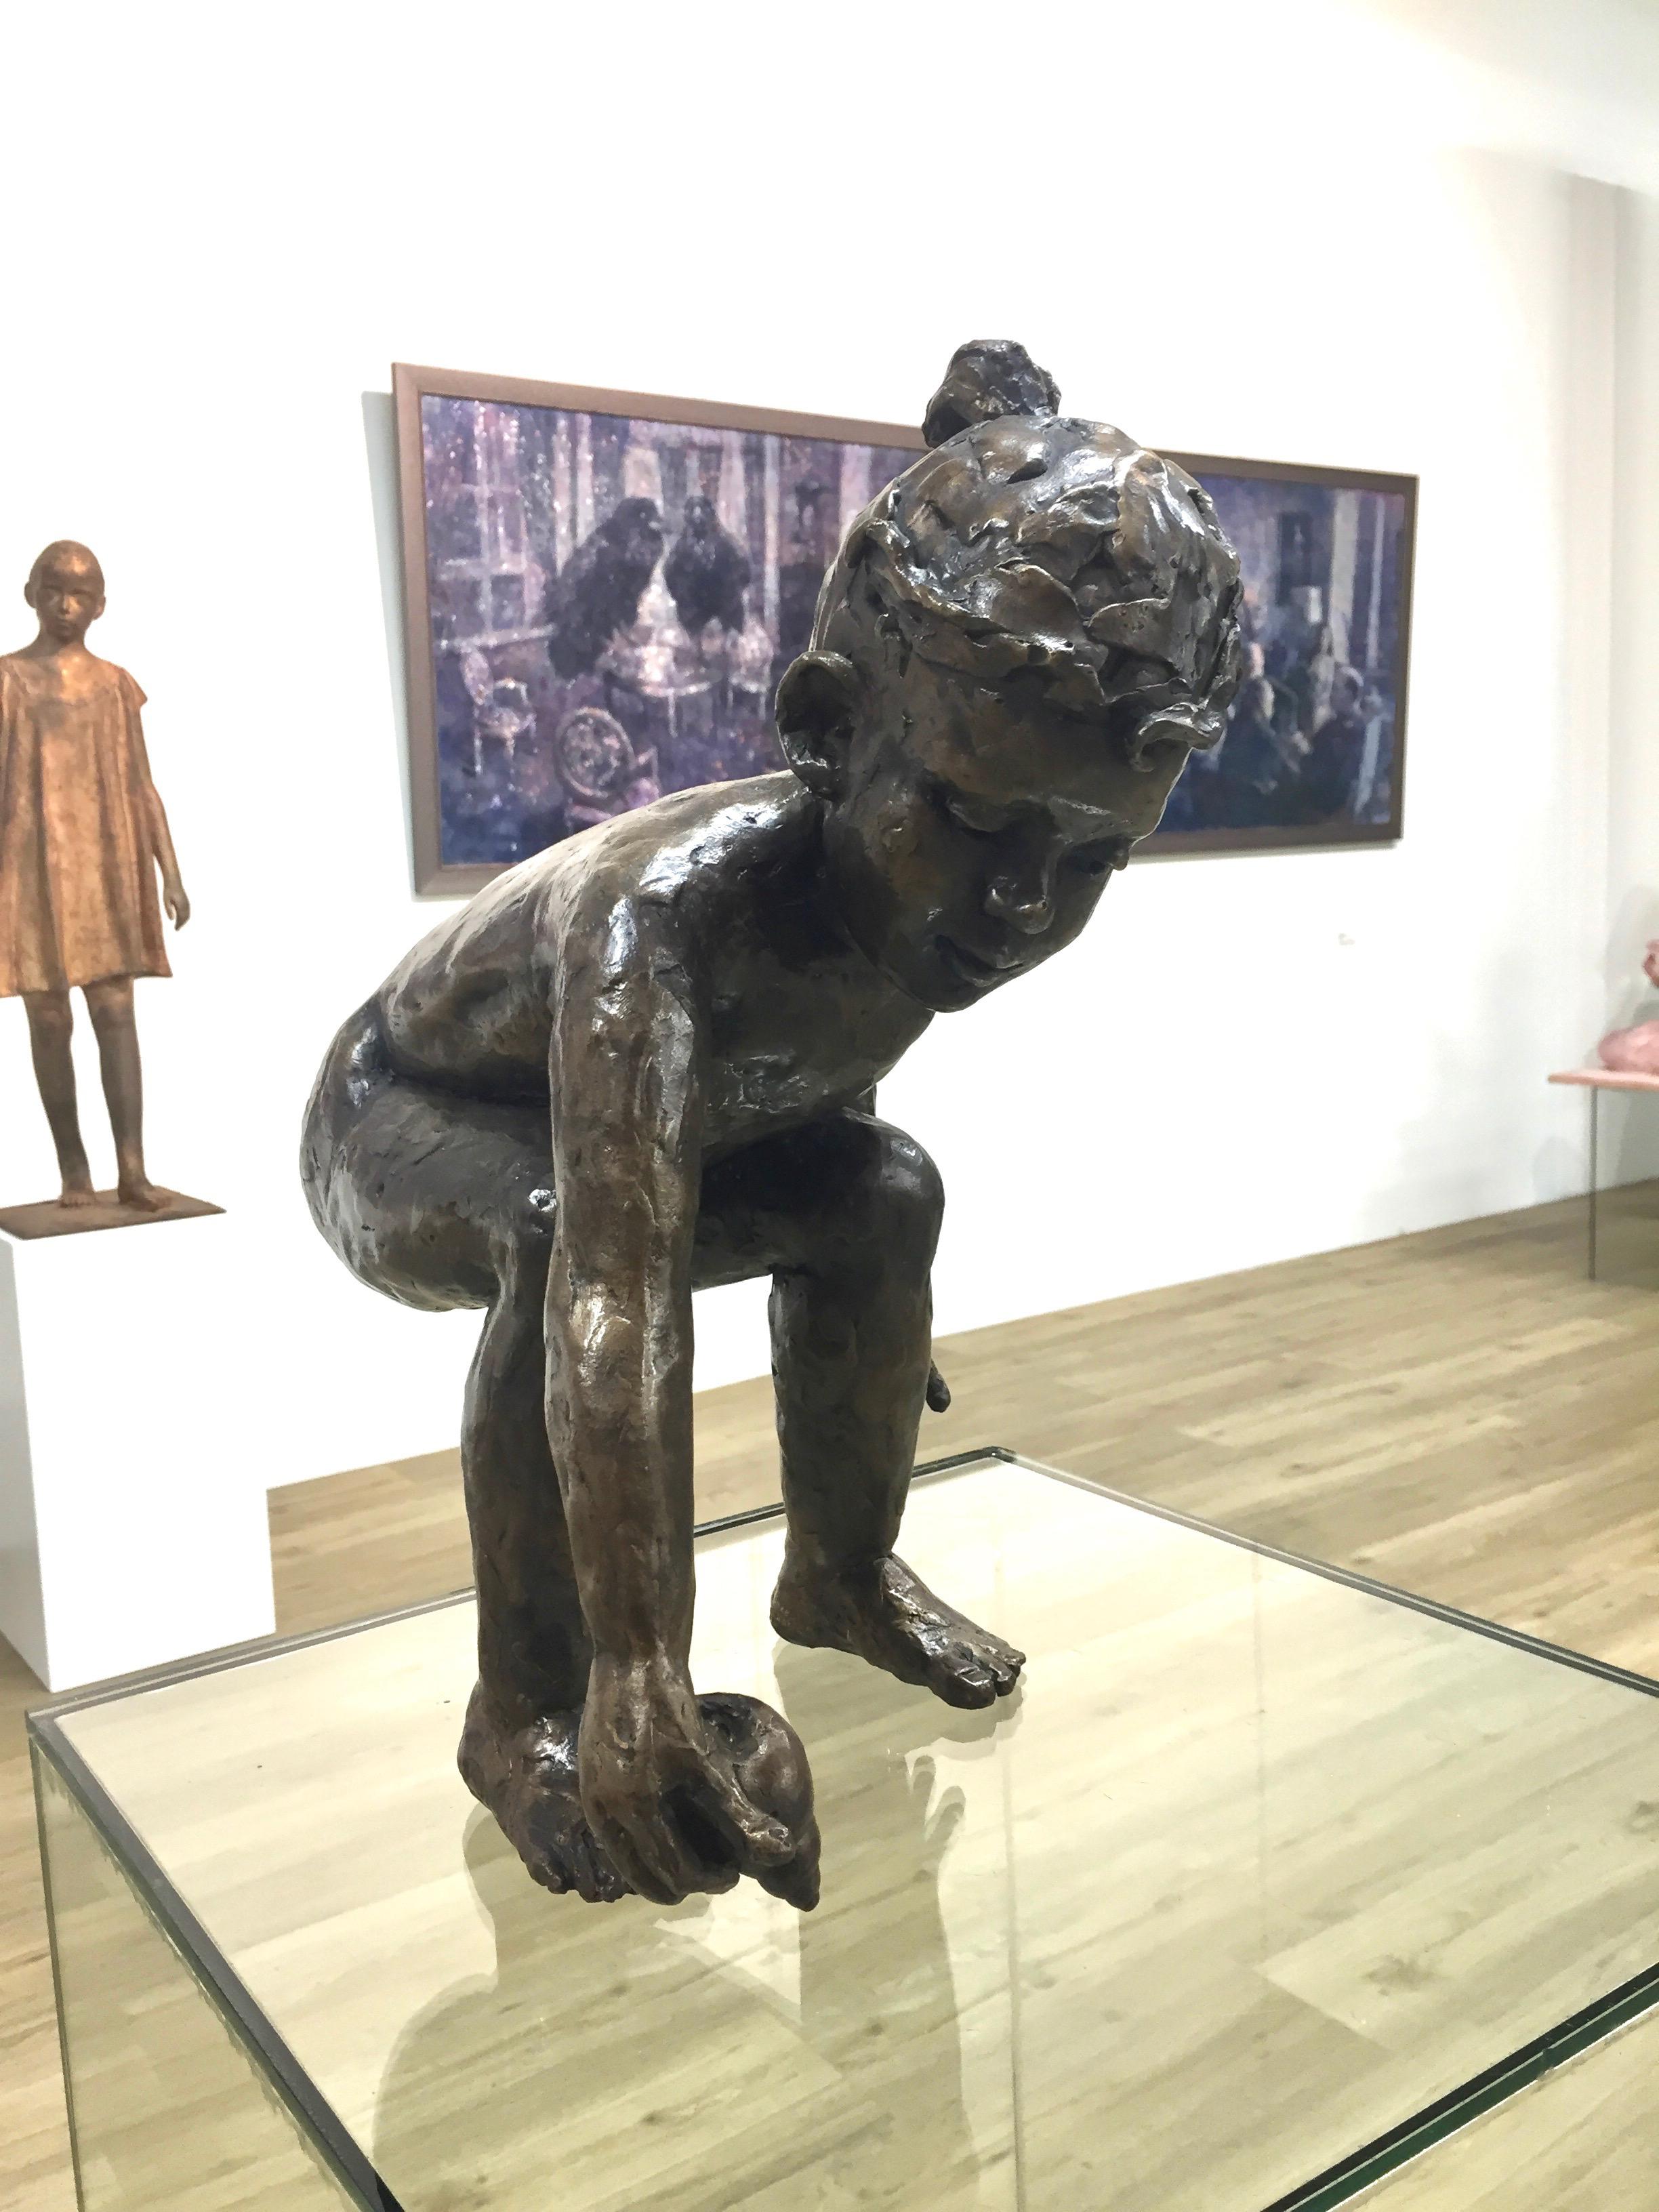 Mouvement en bronze
On peut à juste titre qualifier Romee Kanis de vieille connaissance de la Calle, puisque son travail était régulièrement présenté à la galerie jusqu'à il y a quelques années. Nous rétablissons cette tradition dans l'honneur. Nous